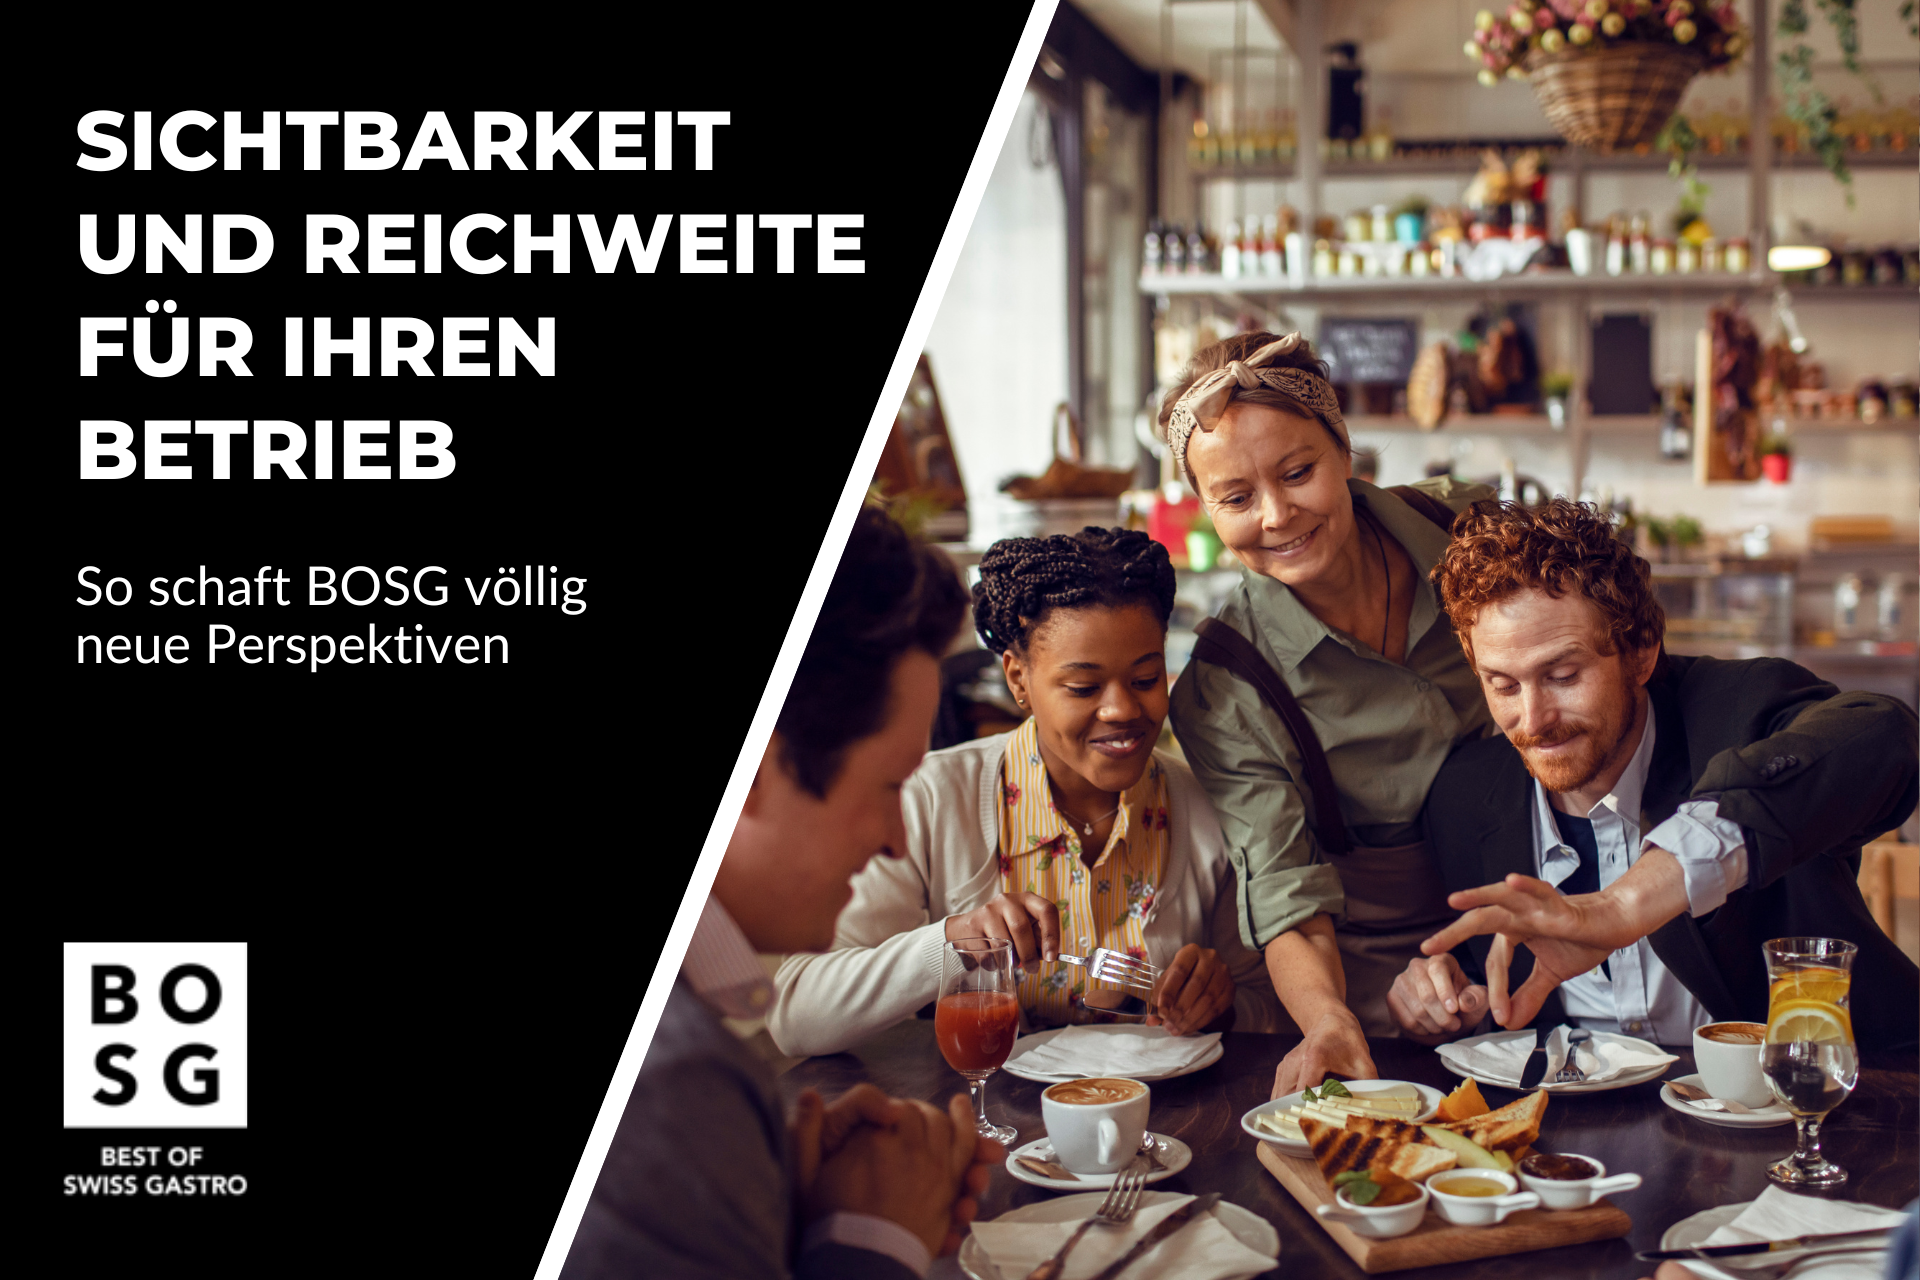 Best of Swiss Gastro Die Chance für Ihren Gastrobetrieb. August_7060